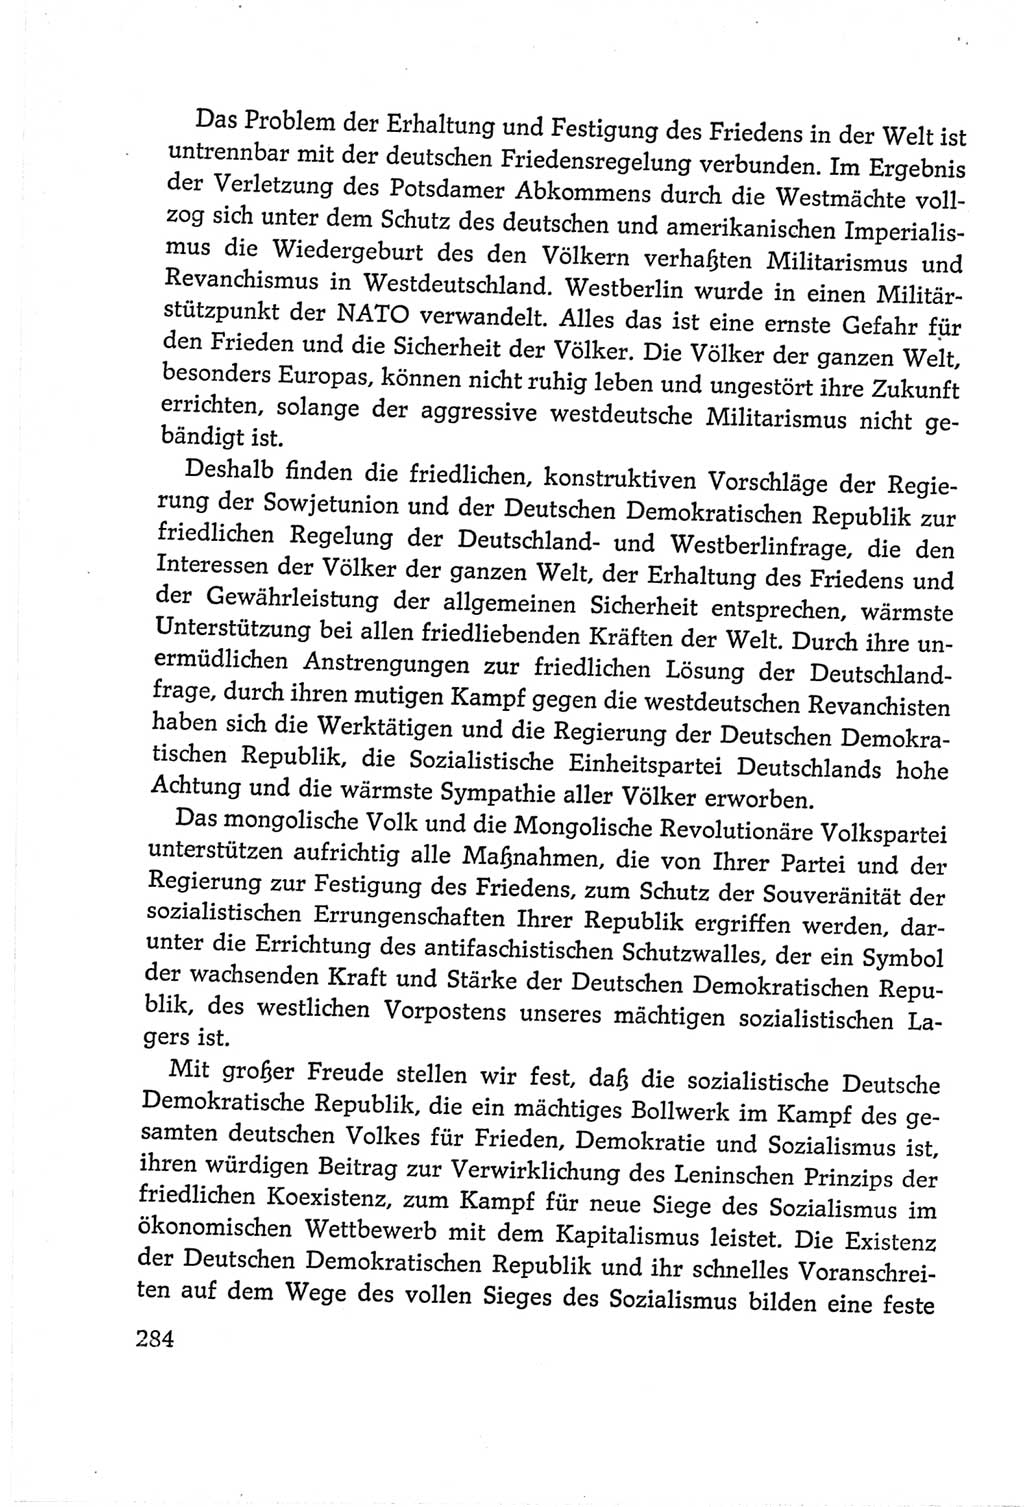 Protokoll der Verhandlungen des Ⅵ. Parteitages der Sozialistischen Einheitspartei Deutschlands (SED) [Deutsche Demokratische Republik (DDR)] 1963, Band Ⅱ, Seite 284 (Prot. Verh. Ⅵ. PT SED DDR 1963, Bd. Ⅱ, S. 284)